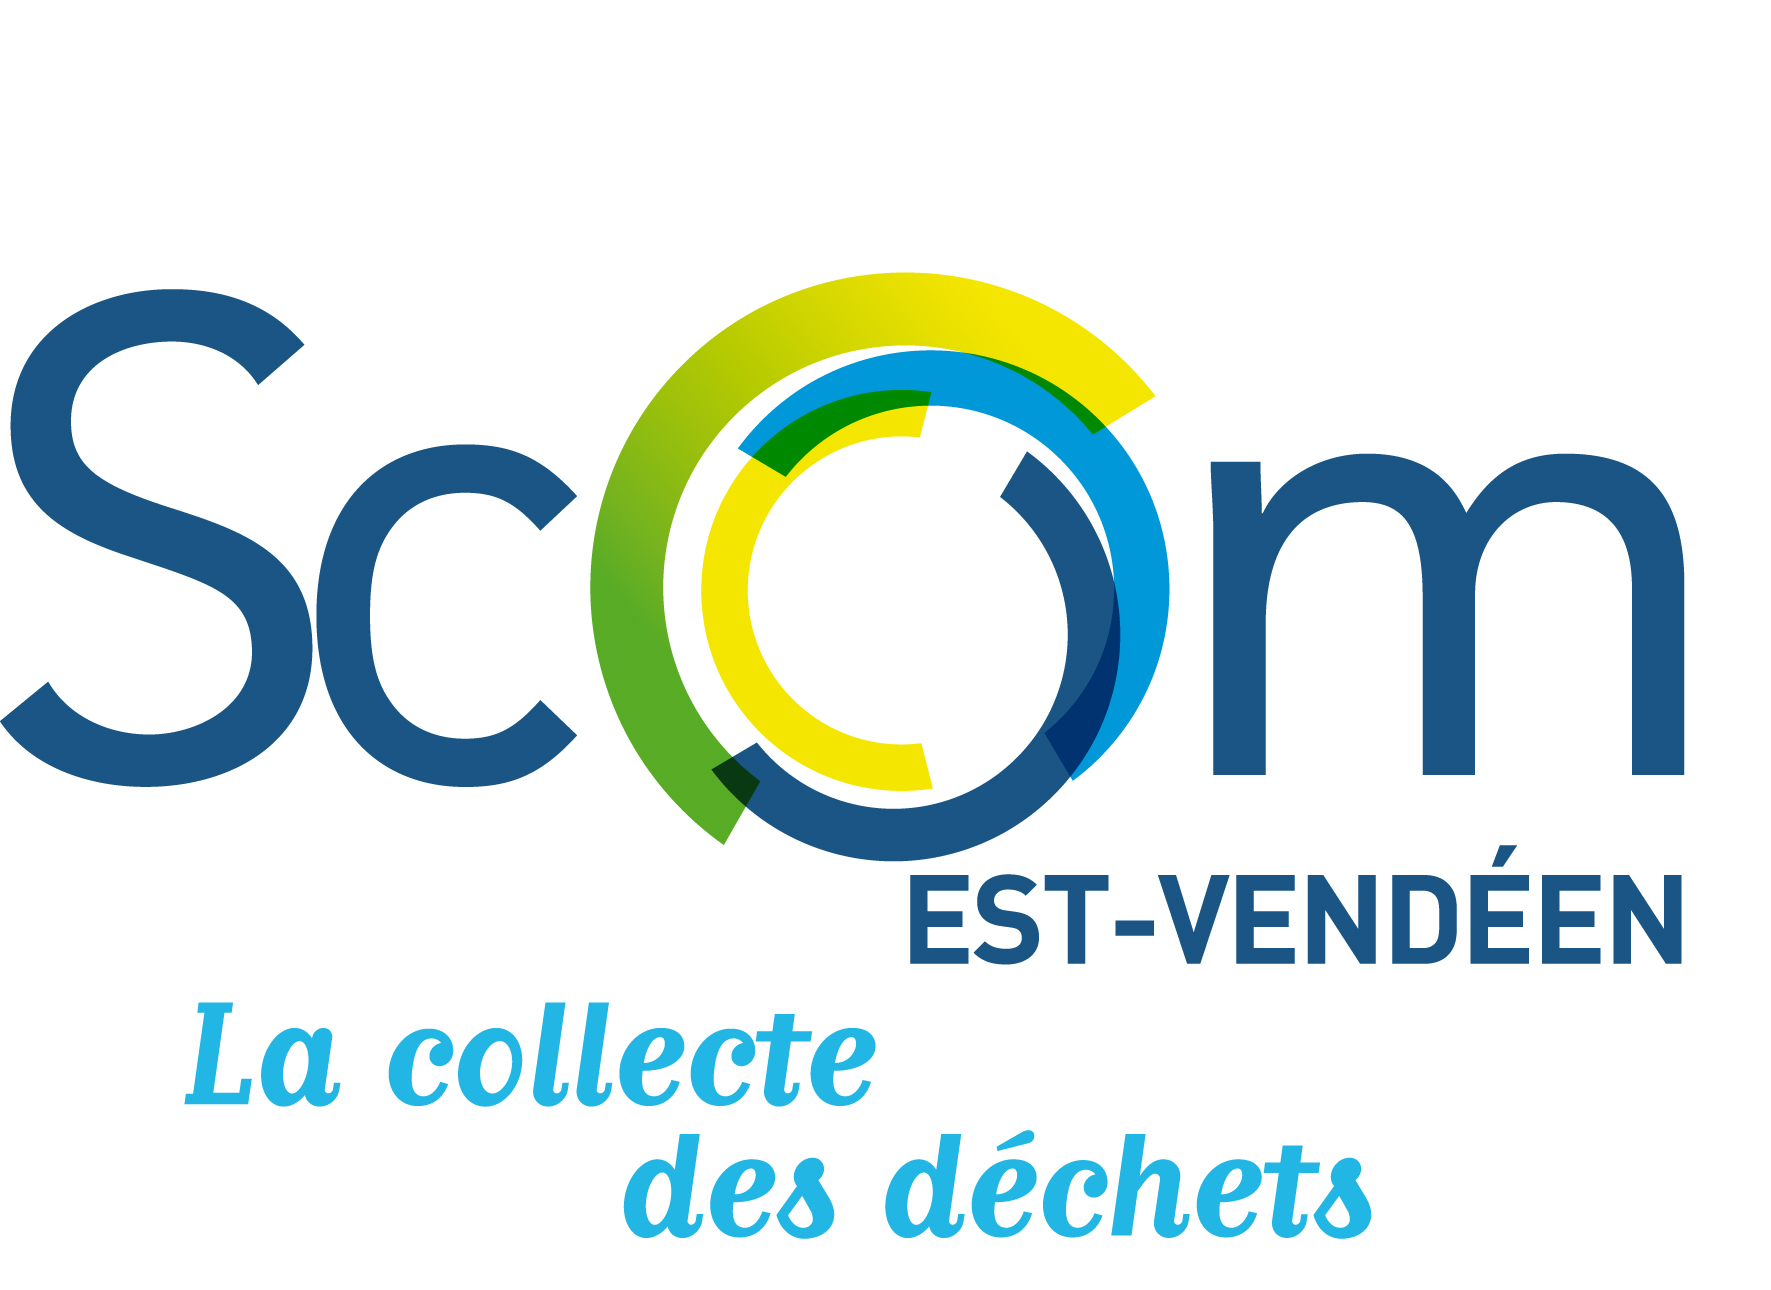 SCOM logo_baseline.jpg